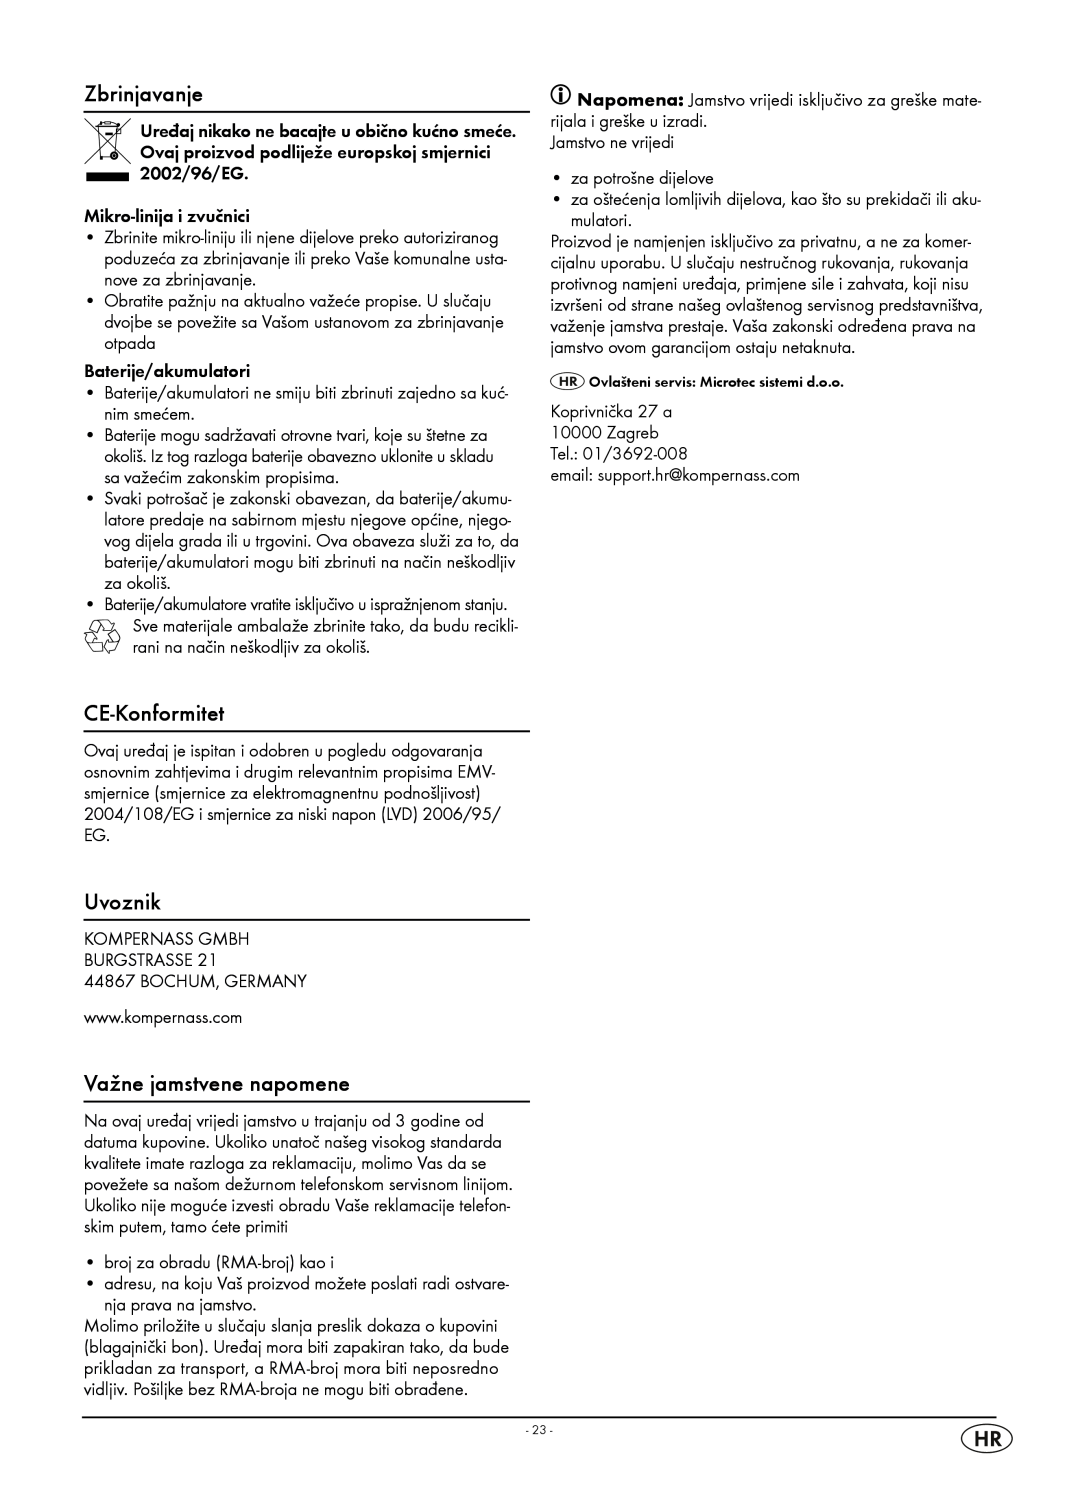 Kompernass KH 2316 manual Zbrinjavanje, CE-Konformitet, Uvoznik, Važne jamstvene napomene 